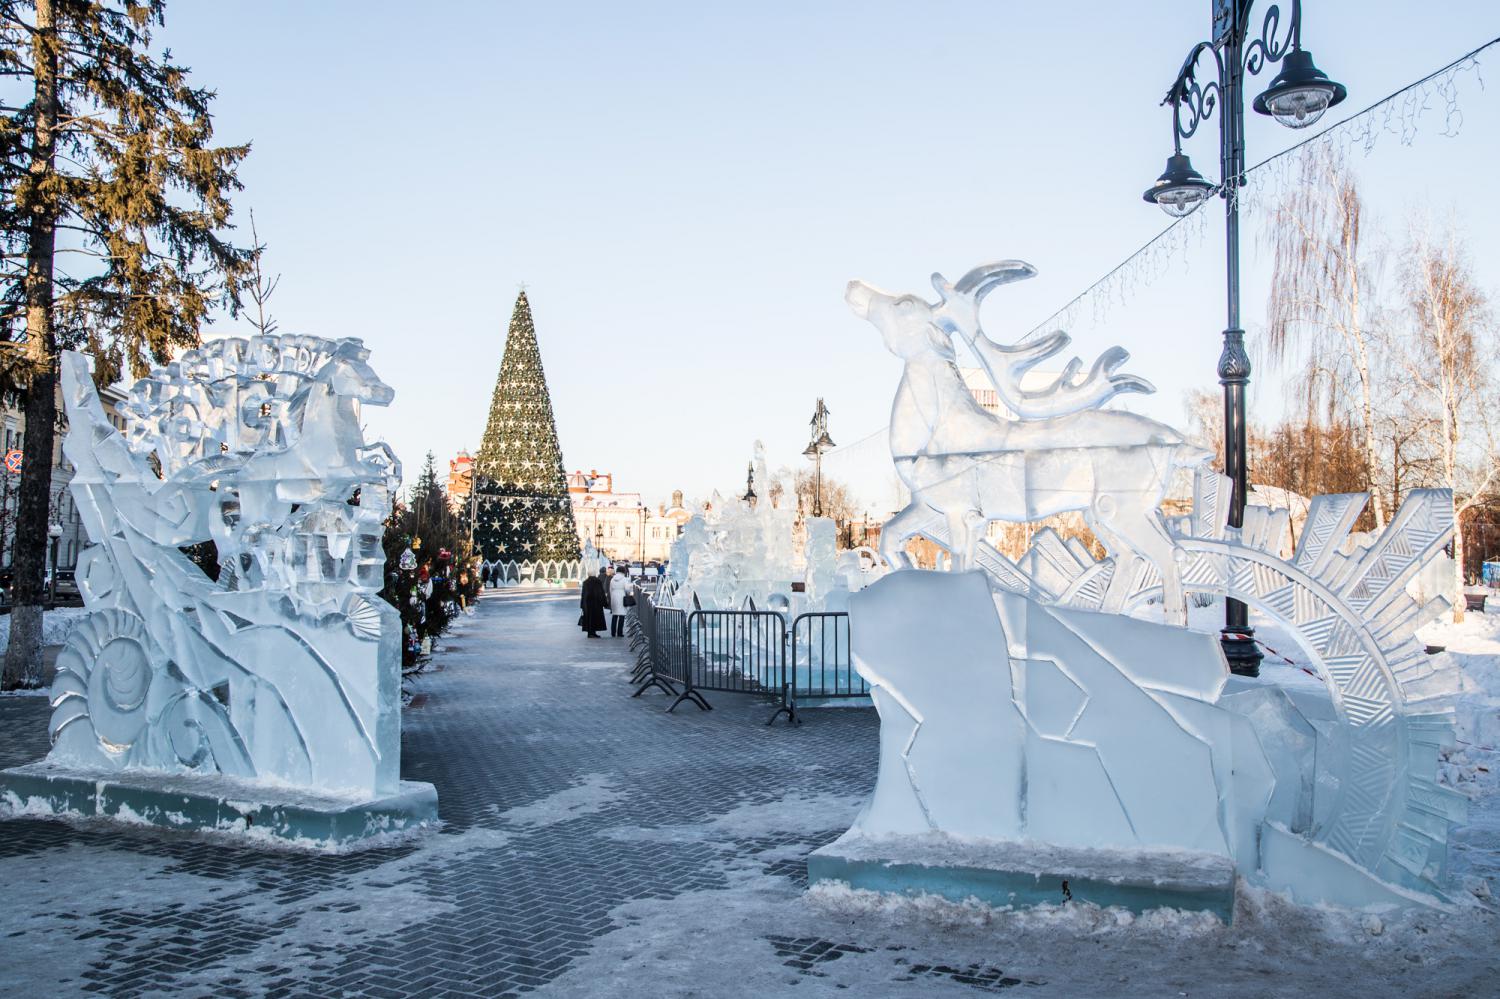 Новый год ❄, Томские новости, конкурс фестиваль народное искусство новый год В декабре Томск украсят ледяные скульптуры, посвященные народному искусству